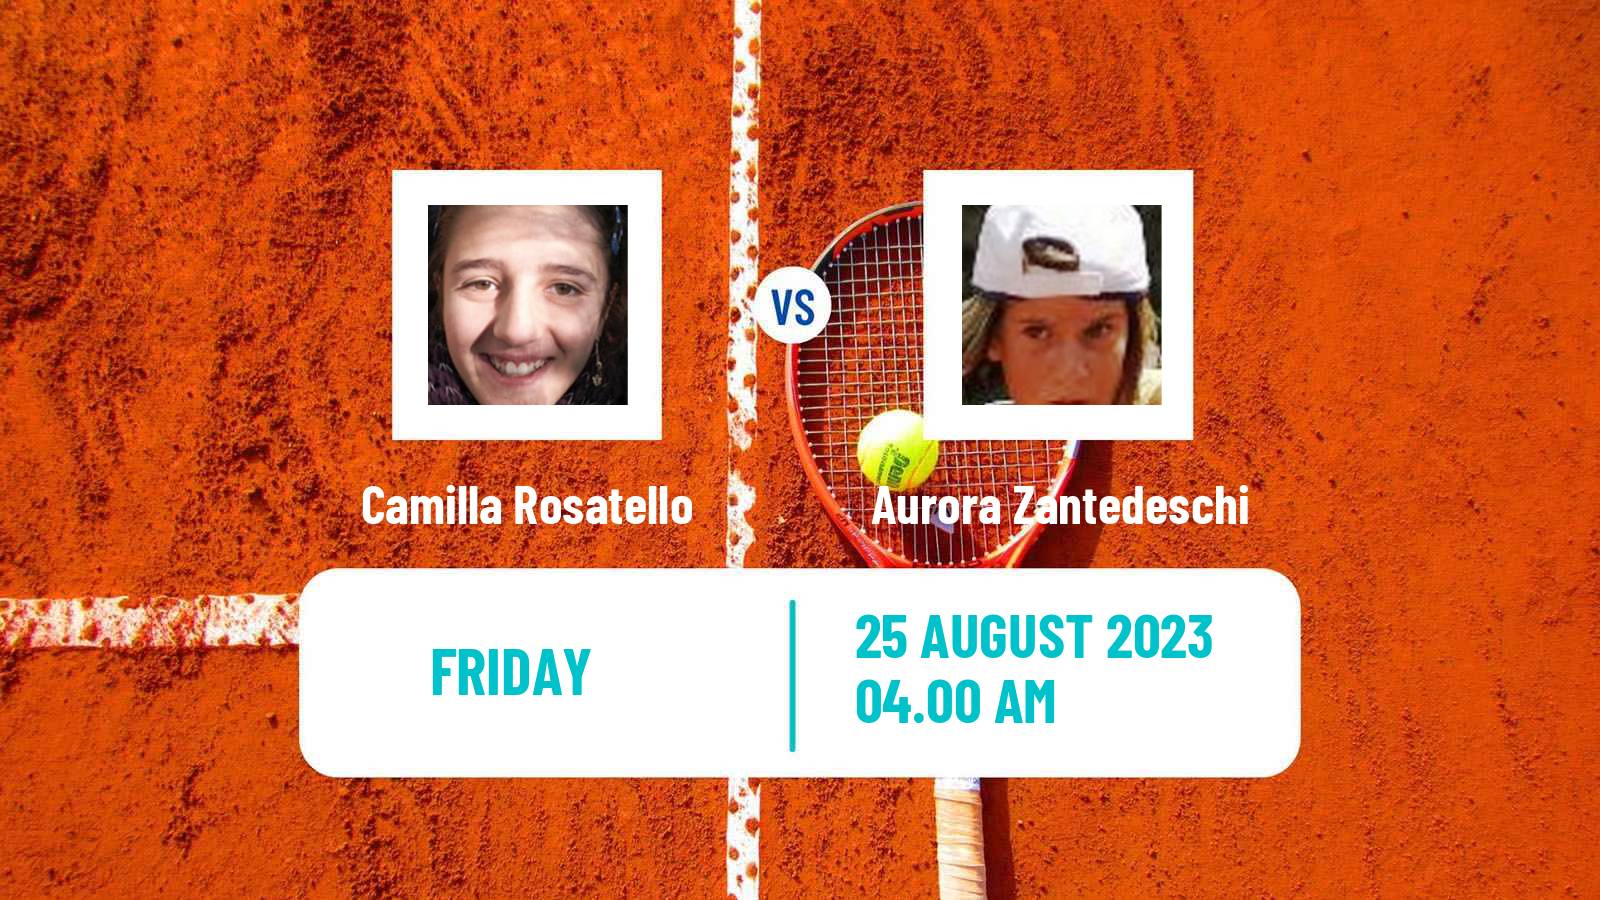 Tennis ITF W60 Prerov Women Camilla Rosatello - Aurora Zantedeschi